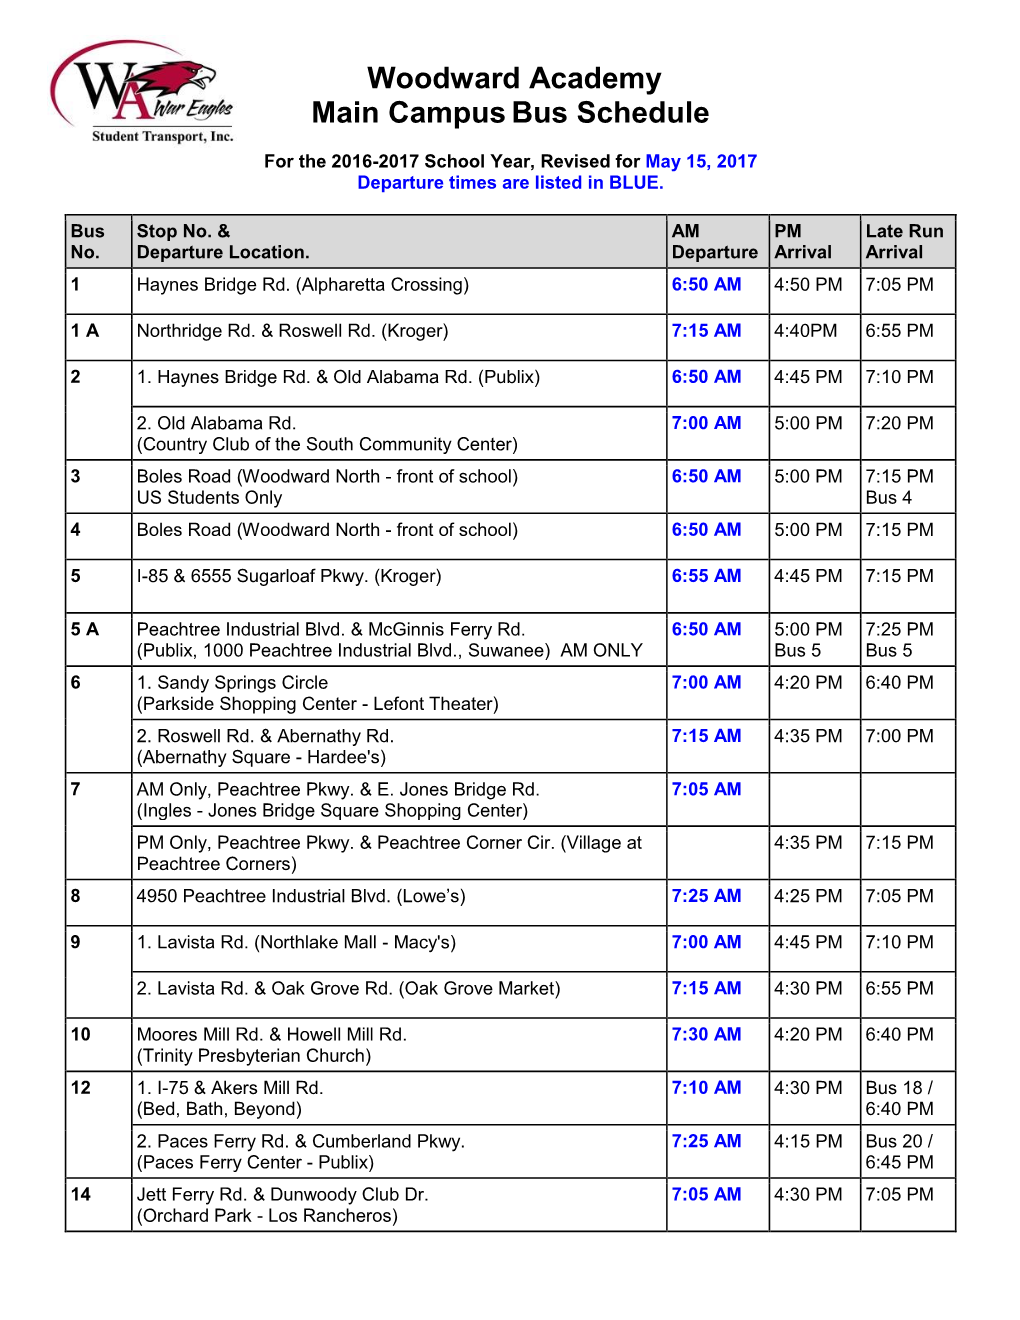 Woodward Academy Main Campusbus Schedule